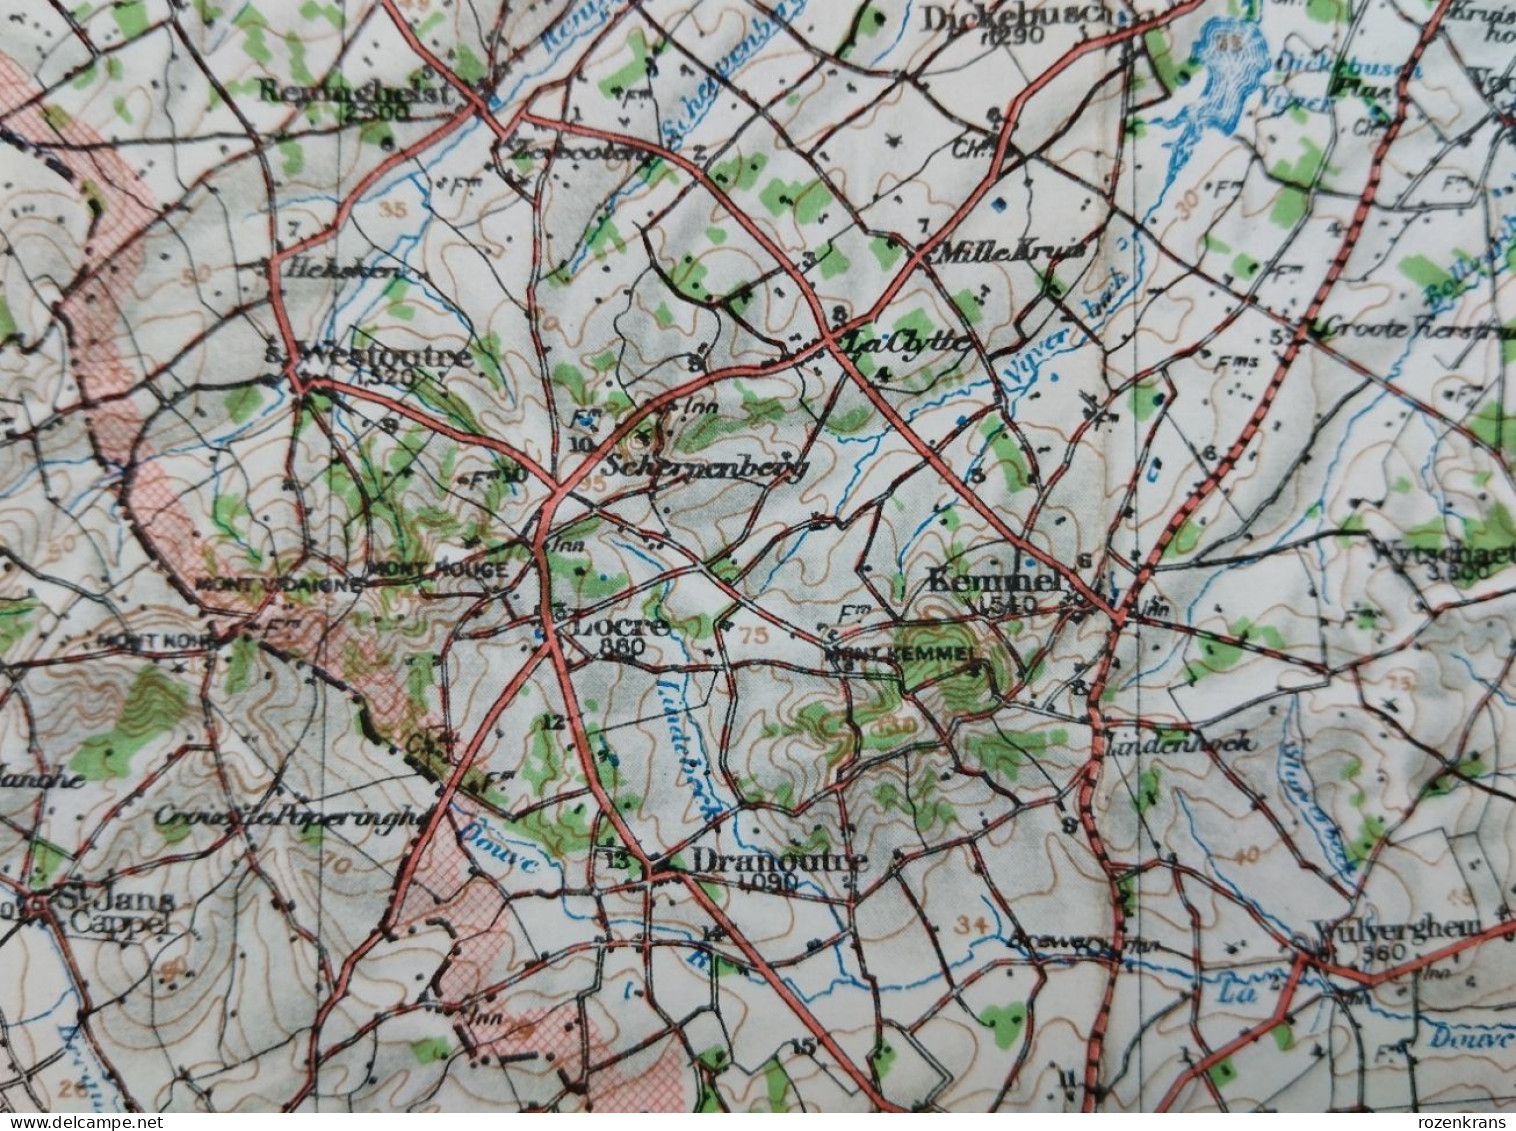 Carte Topographique Militaire UK War Office 1917 World War 1 WW1 Hazebrouck Ieper Poperinge Armentieres Cassel Kemmel - Topographische Kaarten